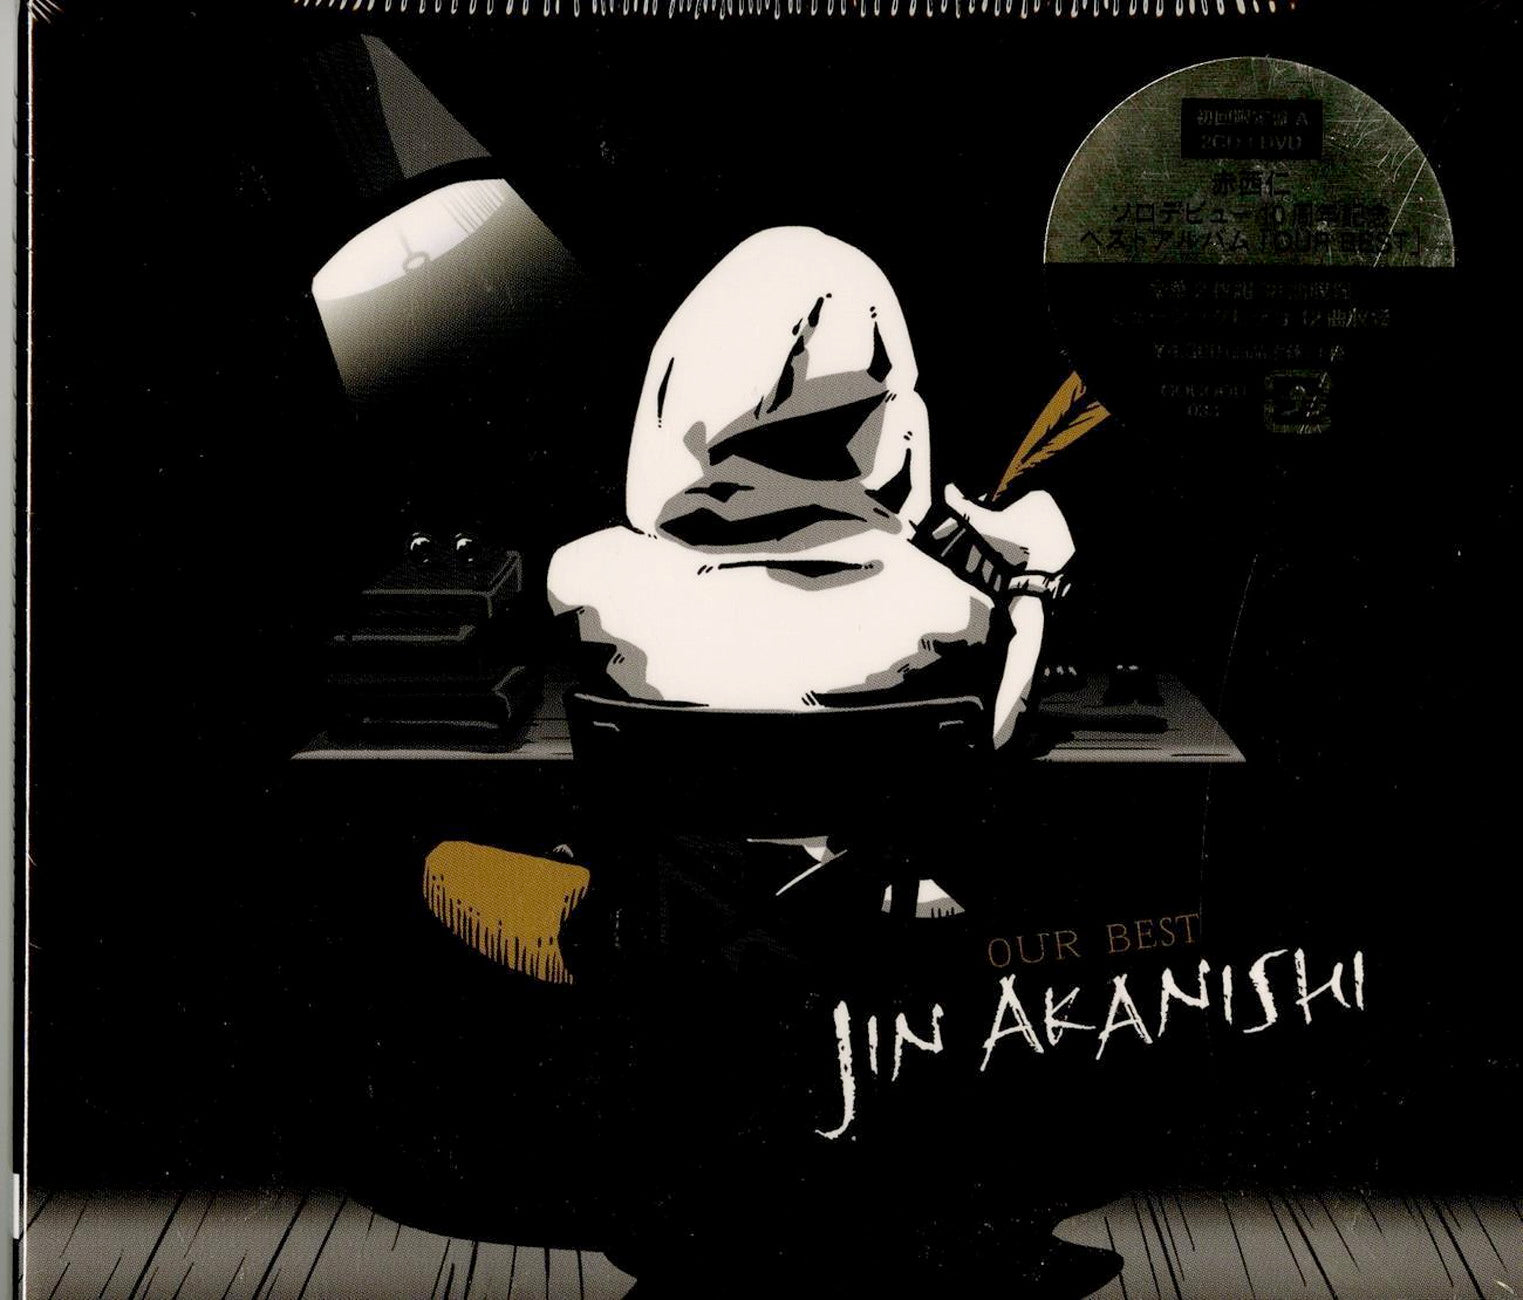 Jin Akanishi - Our Best (Type-A) - Japan 2 CD+DVD Limited Edition – CDs  Vinyl Japan Store 2020, CD, J-Pop/Enka, Jewel case, Jin Akanishi, Pop CDs